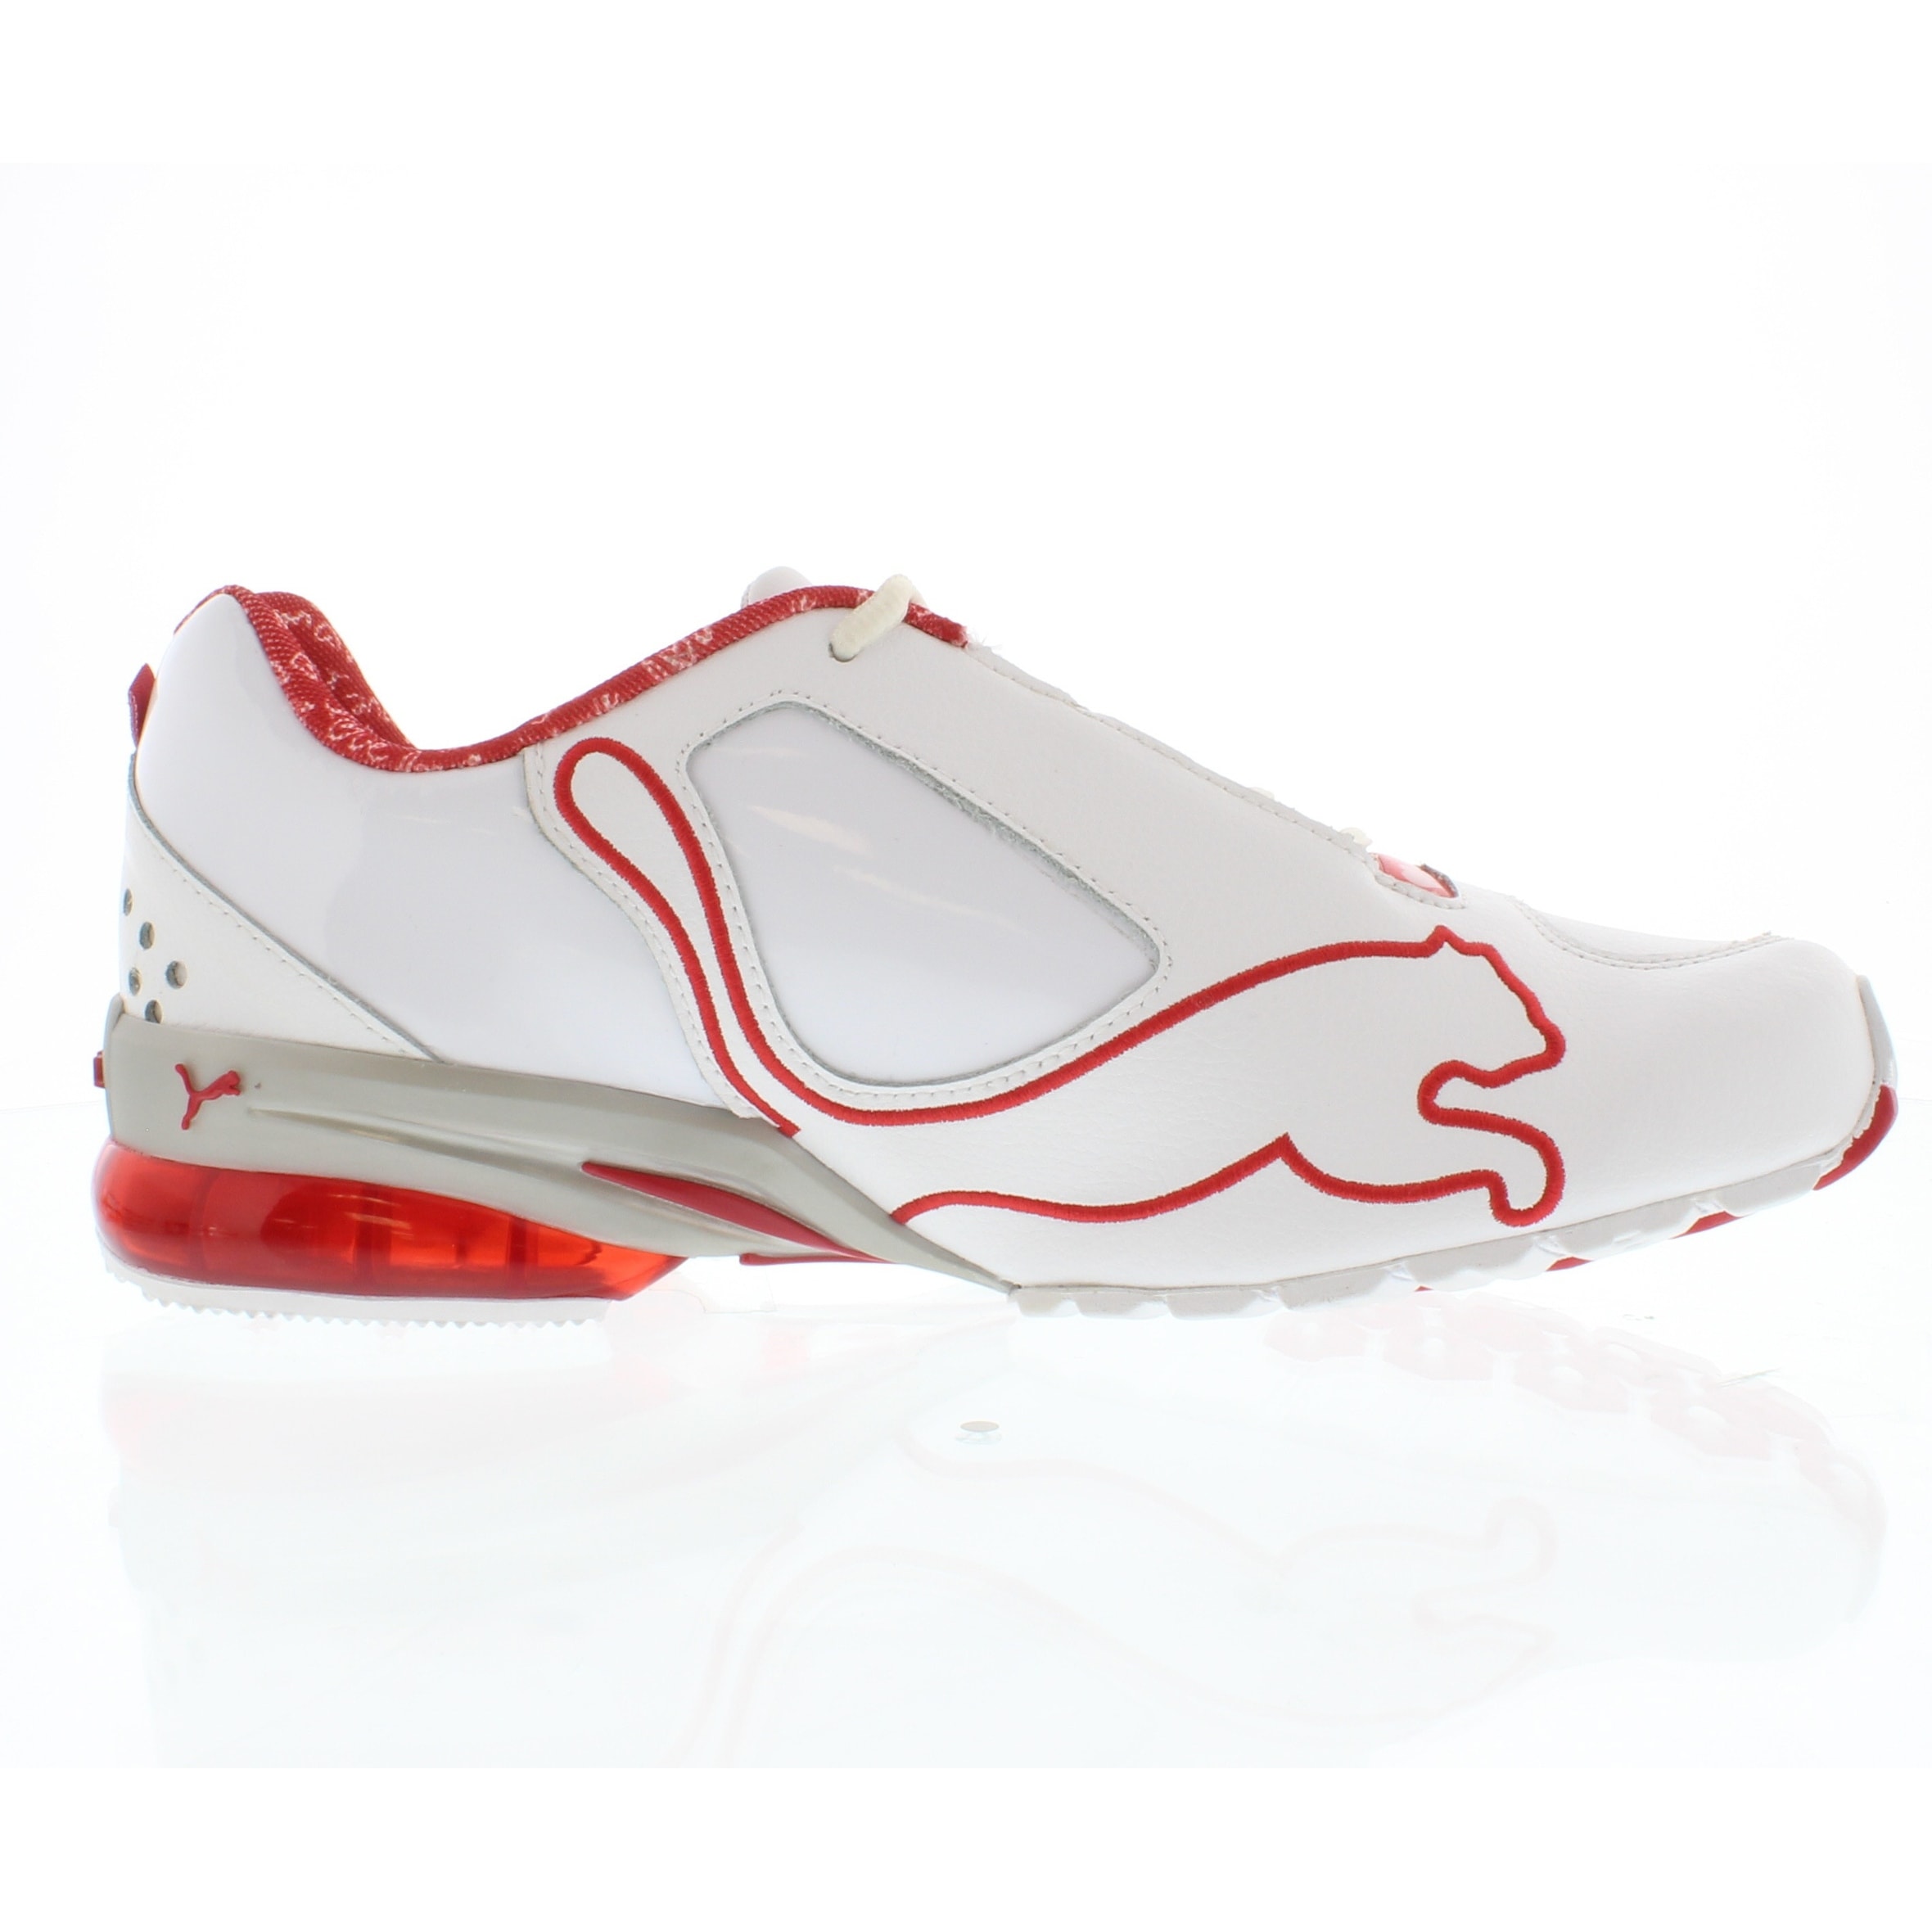 puma women's jago cell running shoe